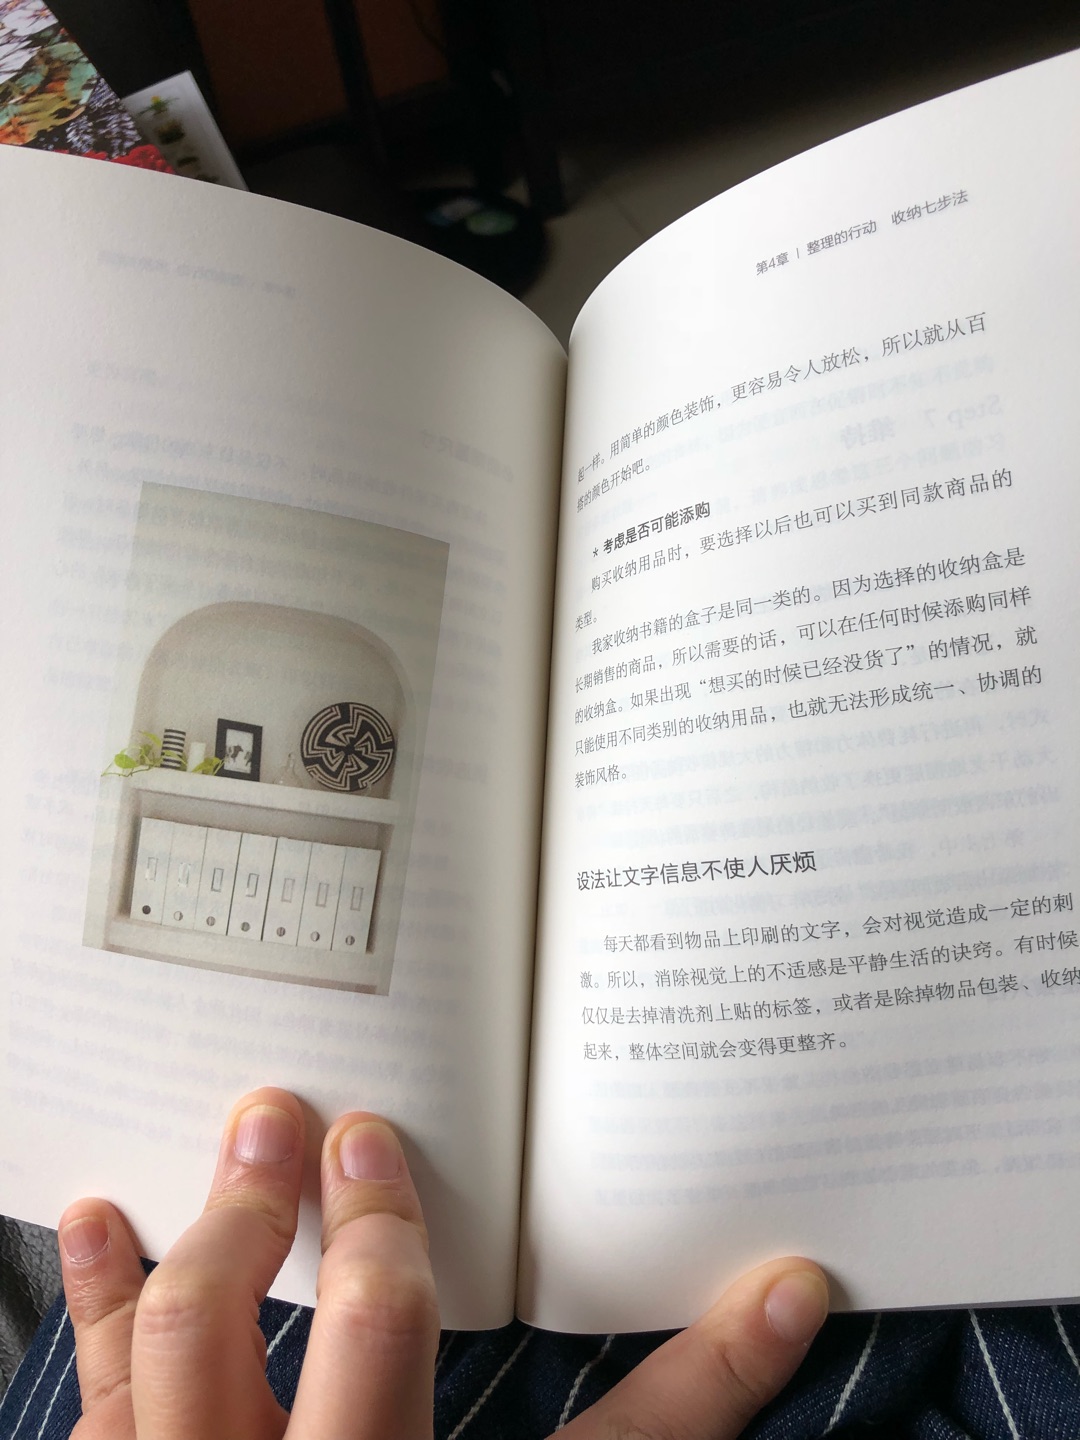 日本人写的有关收纳的书都很不错，整洁，干净，精致，看着让人很舒服，很多值得学习的地方，趁活动买了好多书！